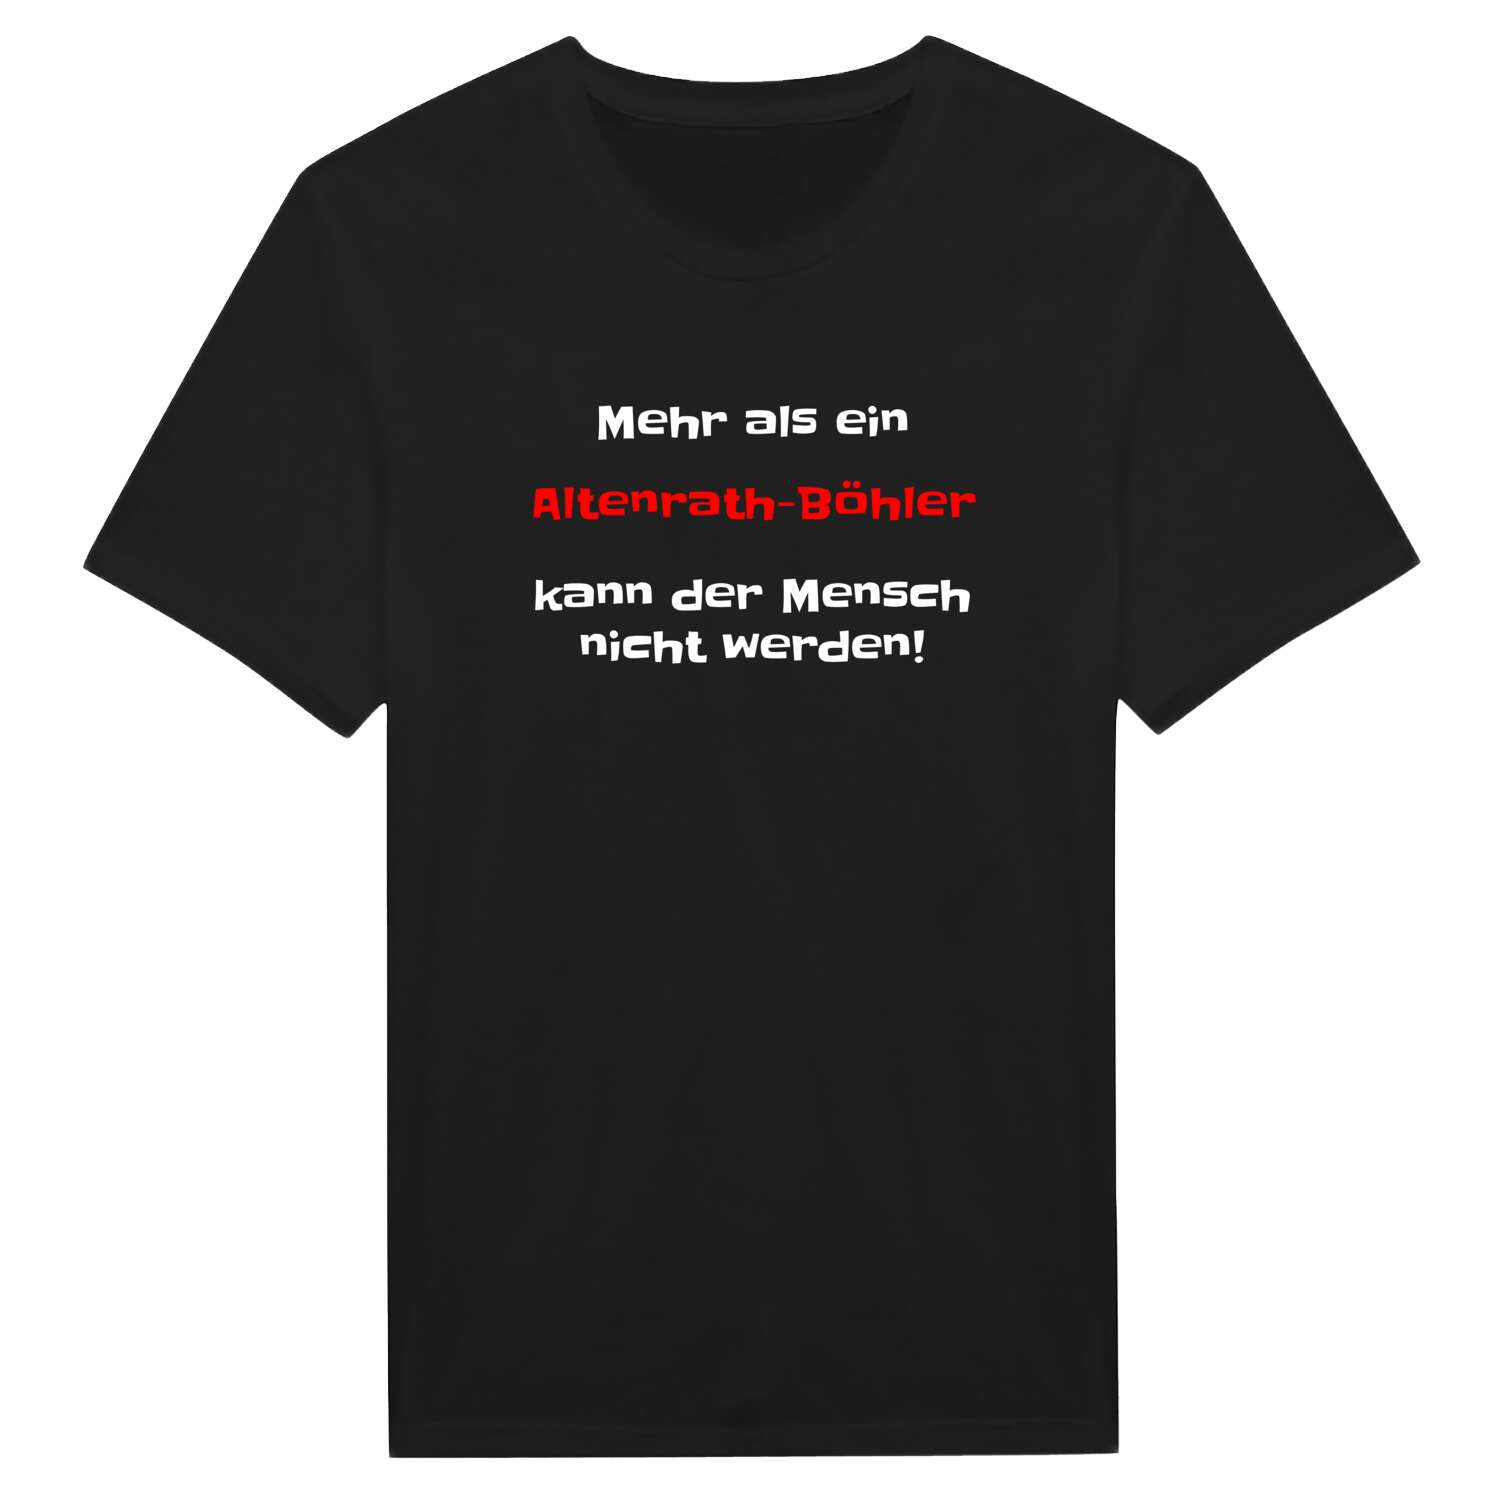 Altenrath-Böhl T-Shirt »Mehr als ein«